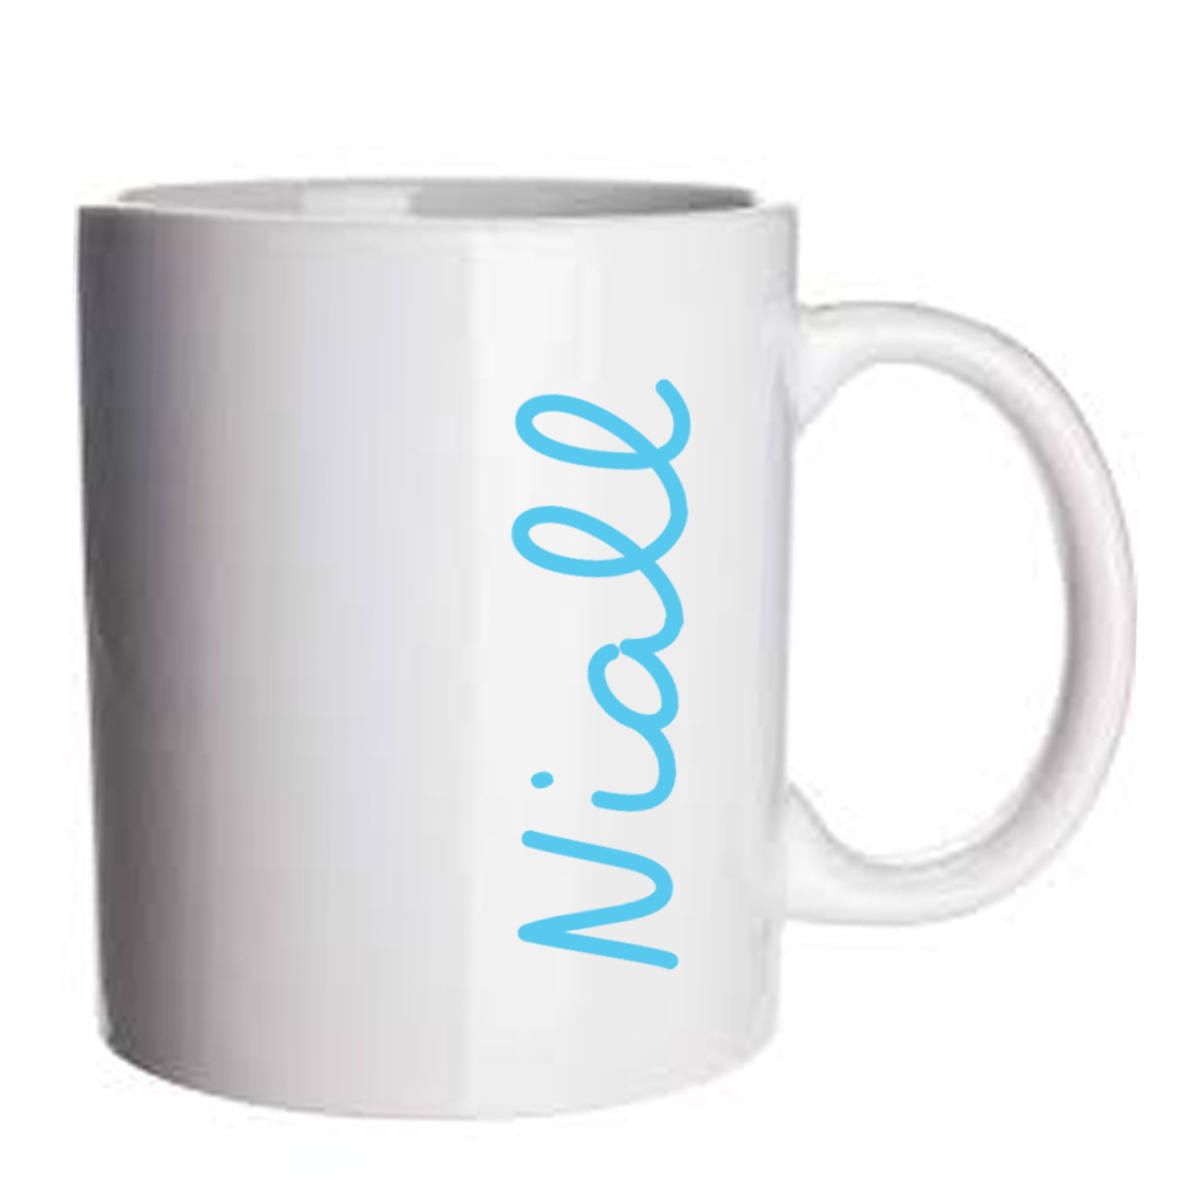 Personalised Islander style mug